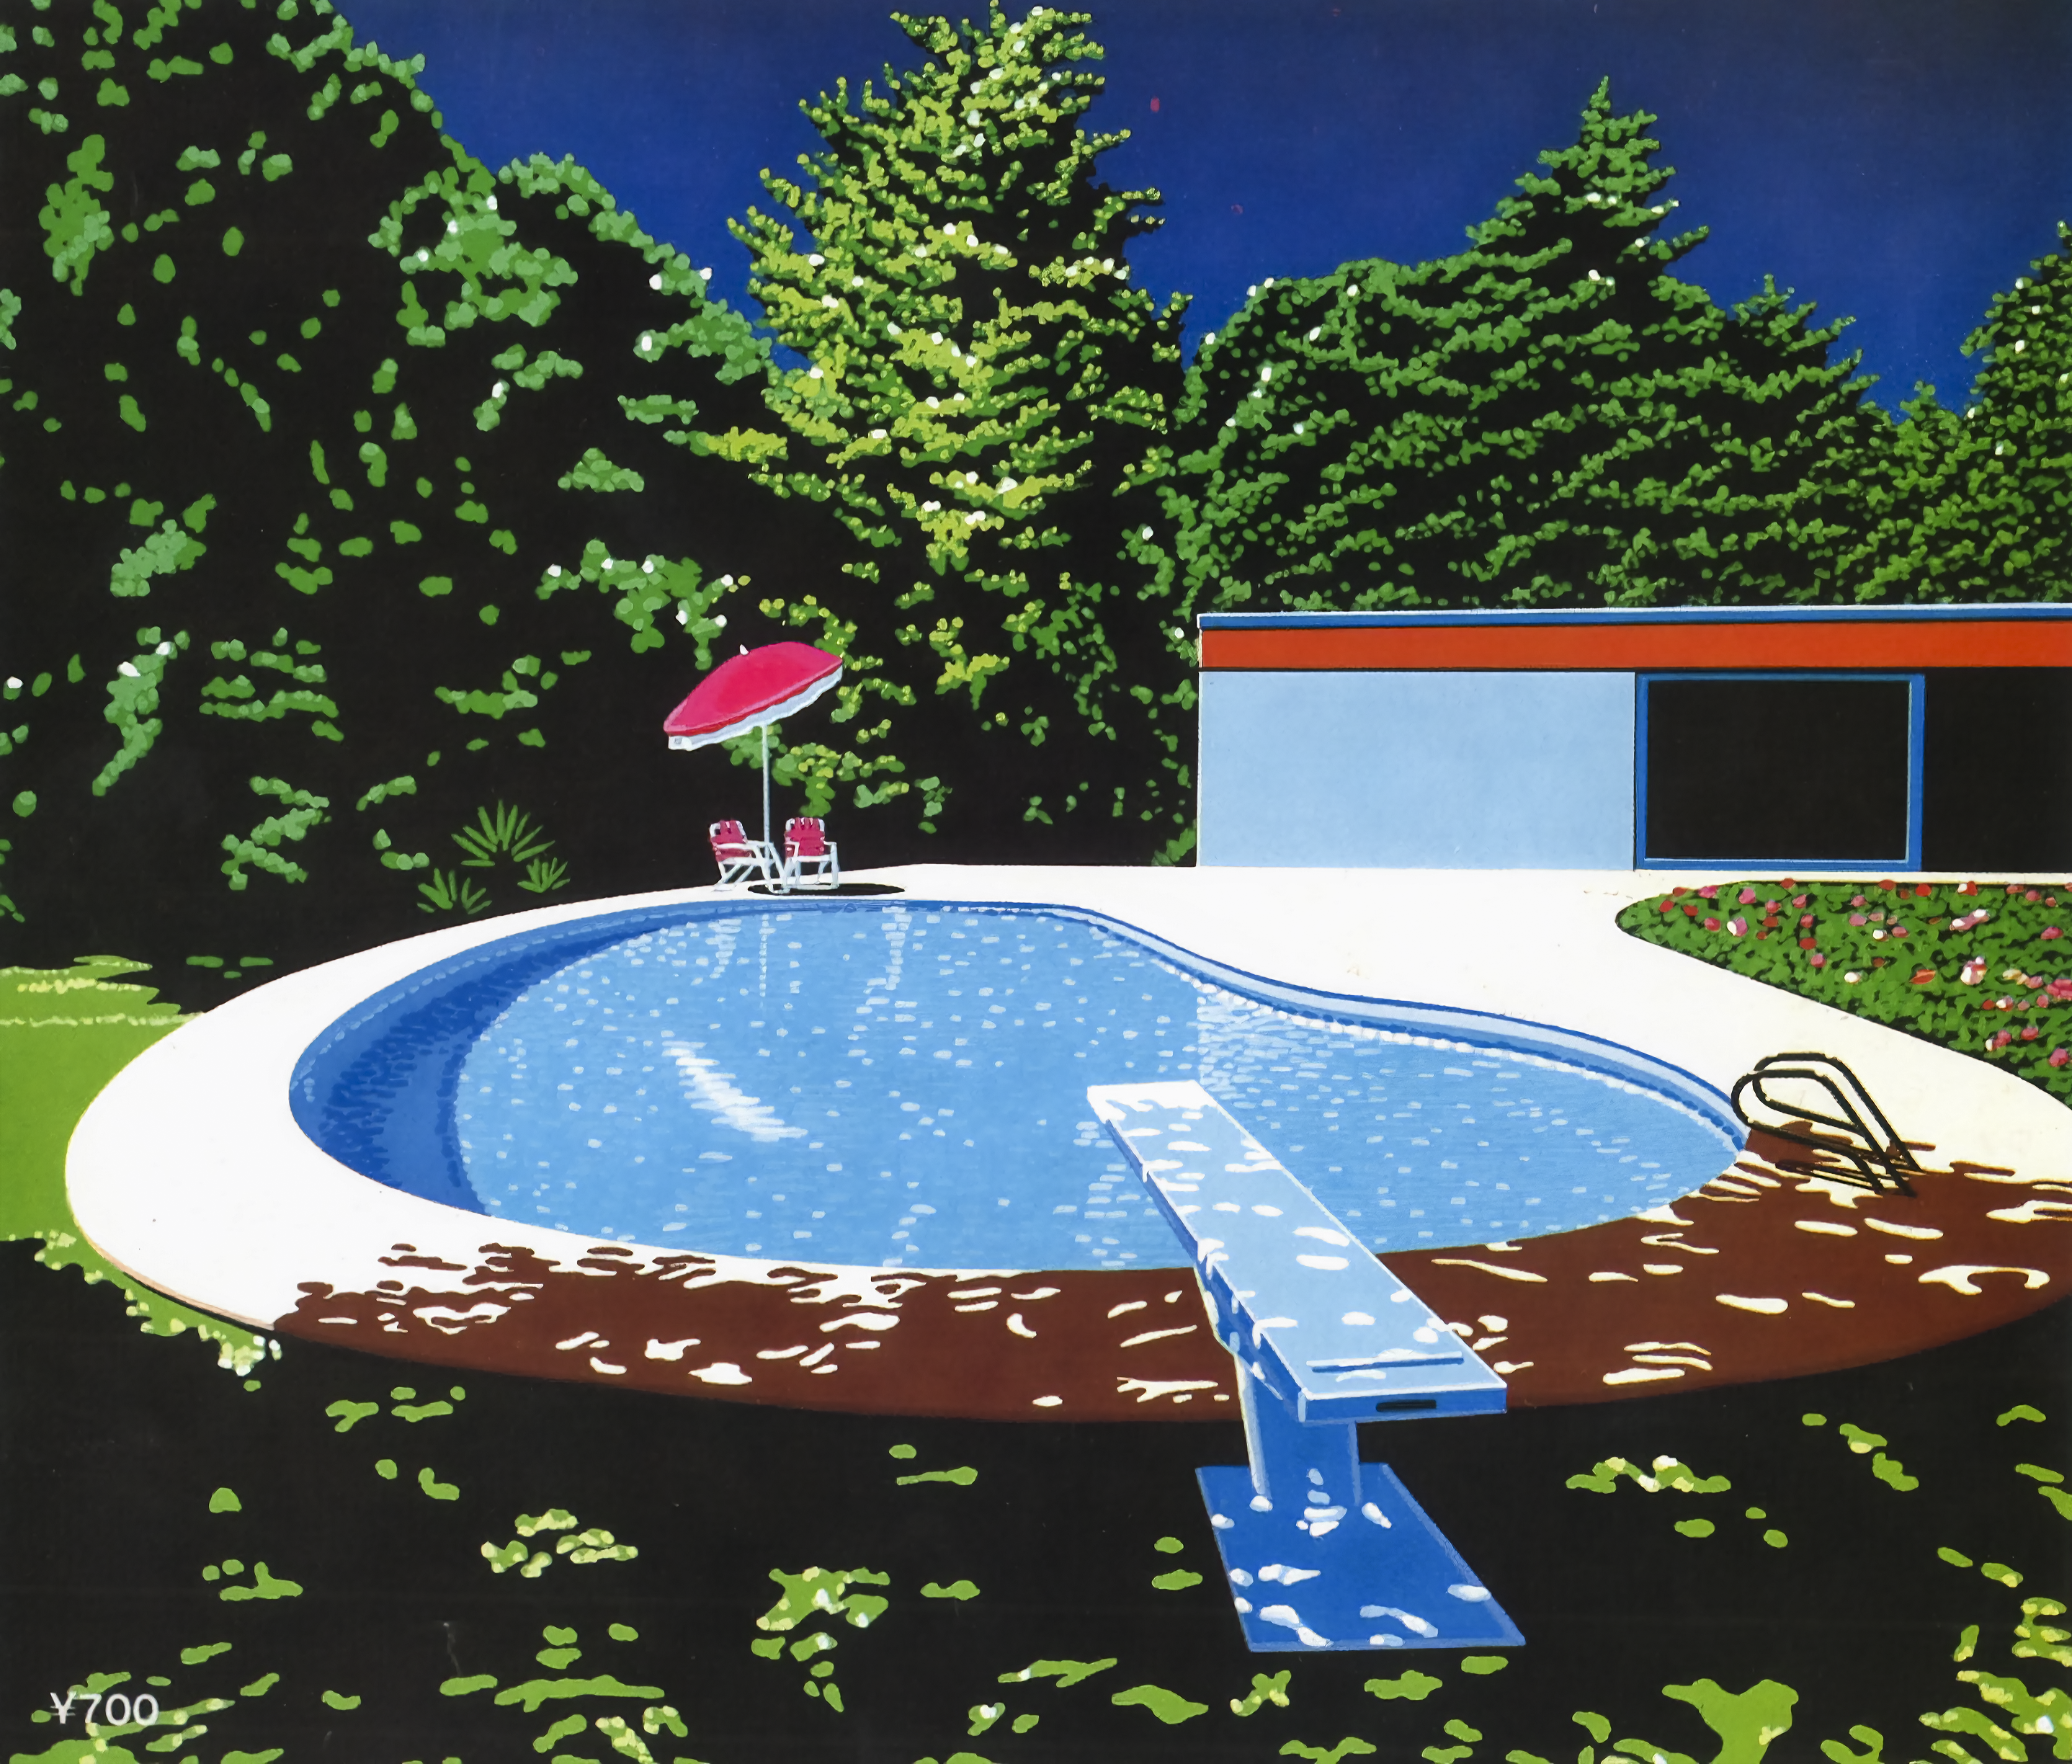 General 2876x2448 Hiroshi Nagai retrowave painting swimming pool